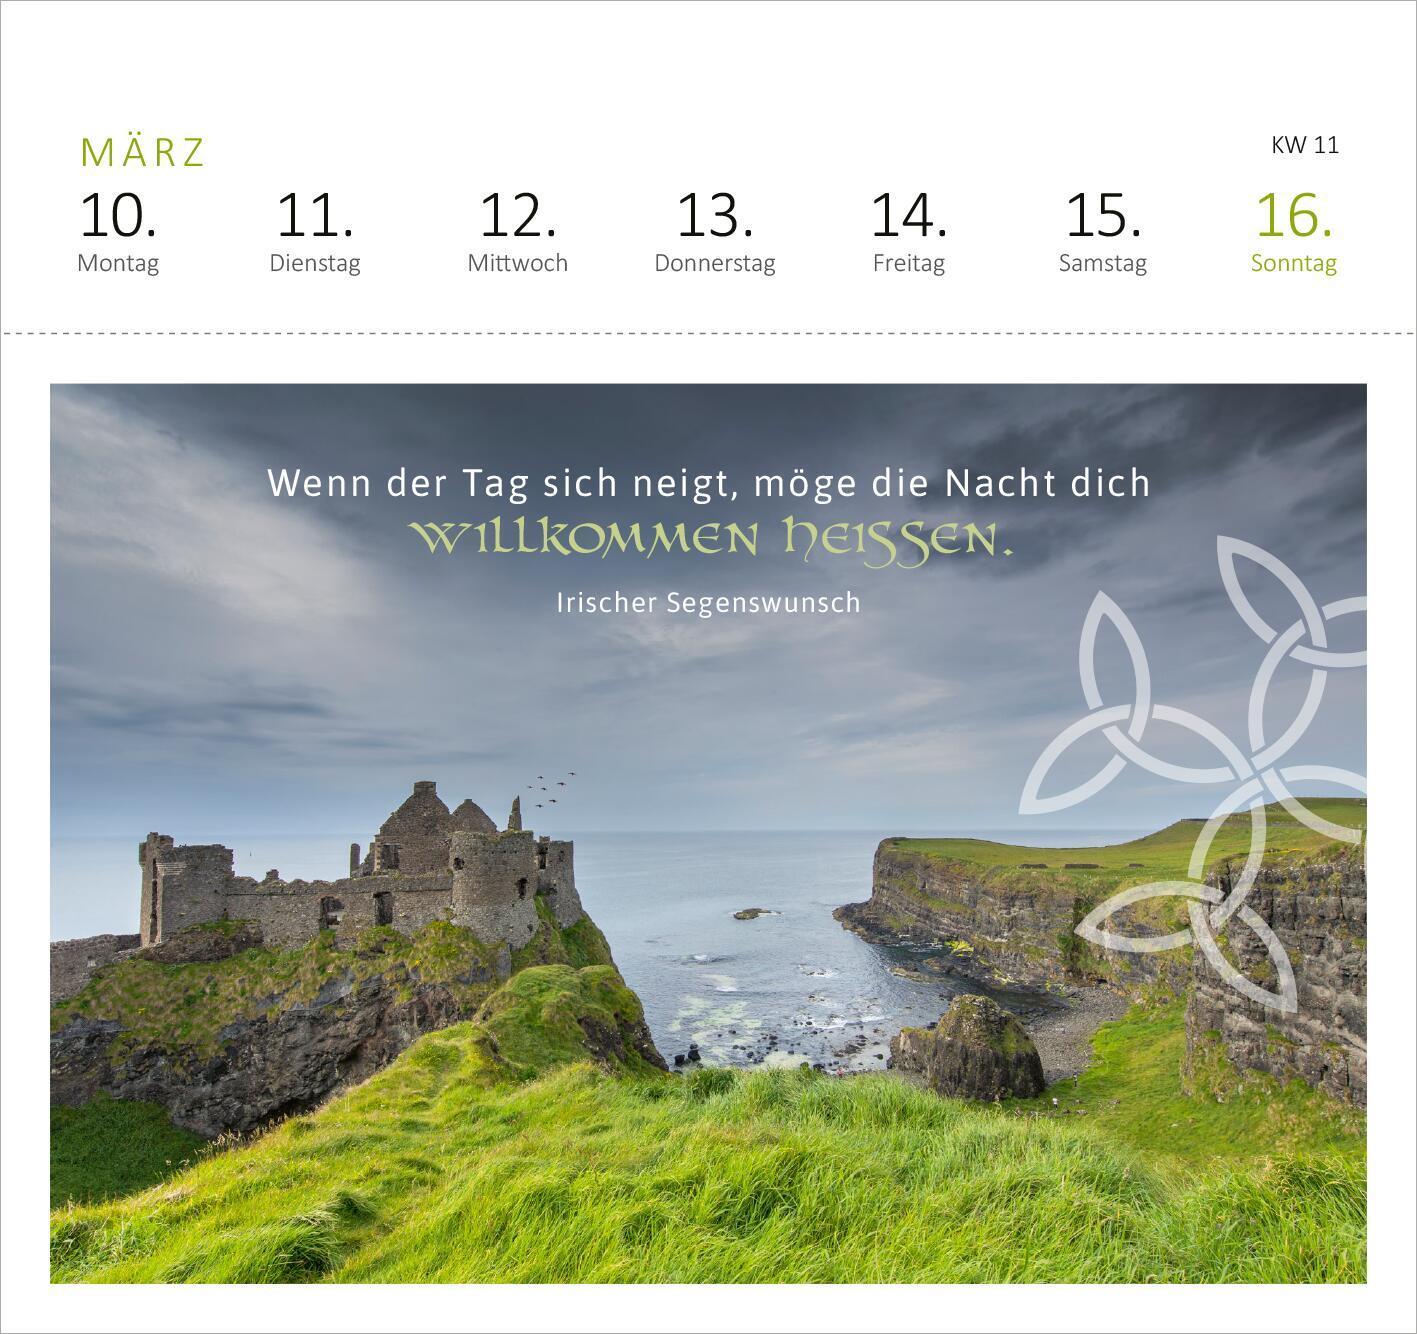 Bild: 4014489132806 | Postkartenkalender Irische Segenswünsche 2025 | Kalender | 108 S.